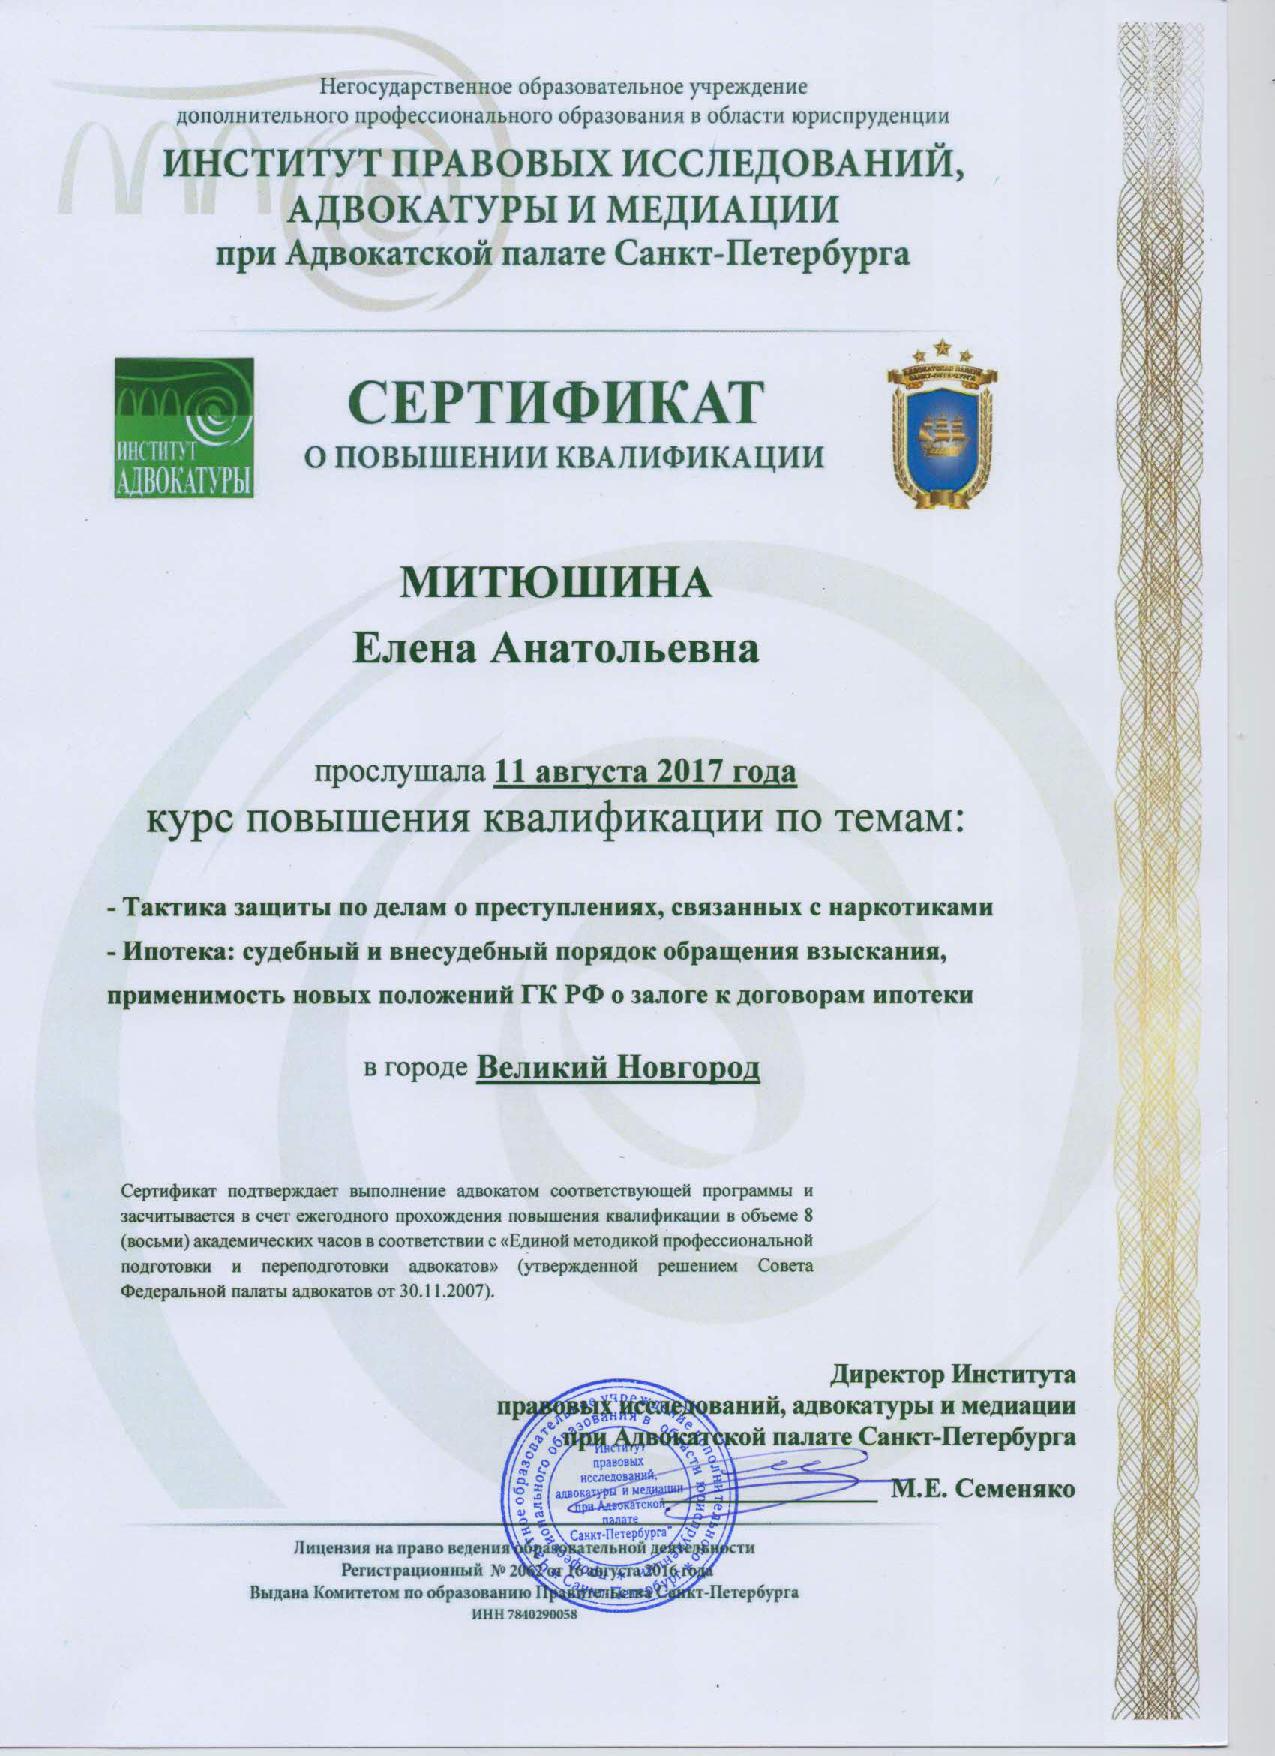 Сертификат о повышении квалификации в Институте правовых исследований